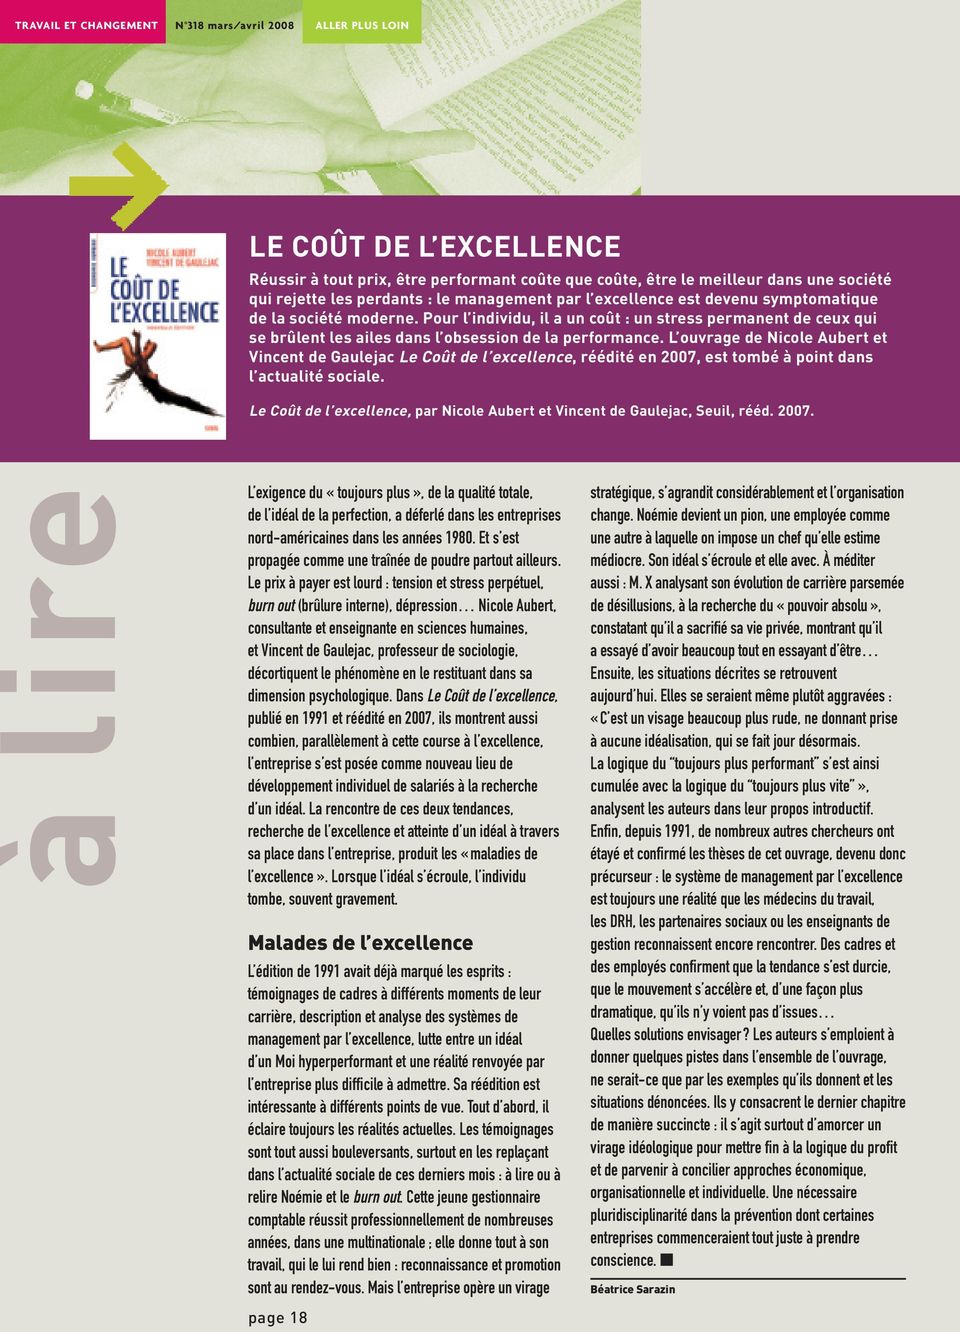 L ouvrage de Nicole Aubert et Vincent de Gaulejac Le Coût de l excellence, réédité en 2007, est tombé à point dans l actualité sociale.